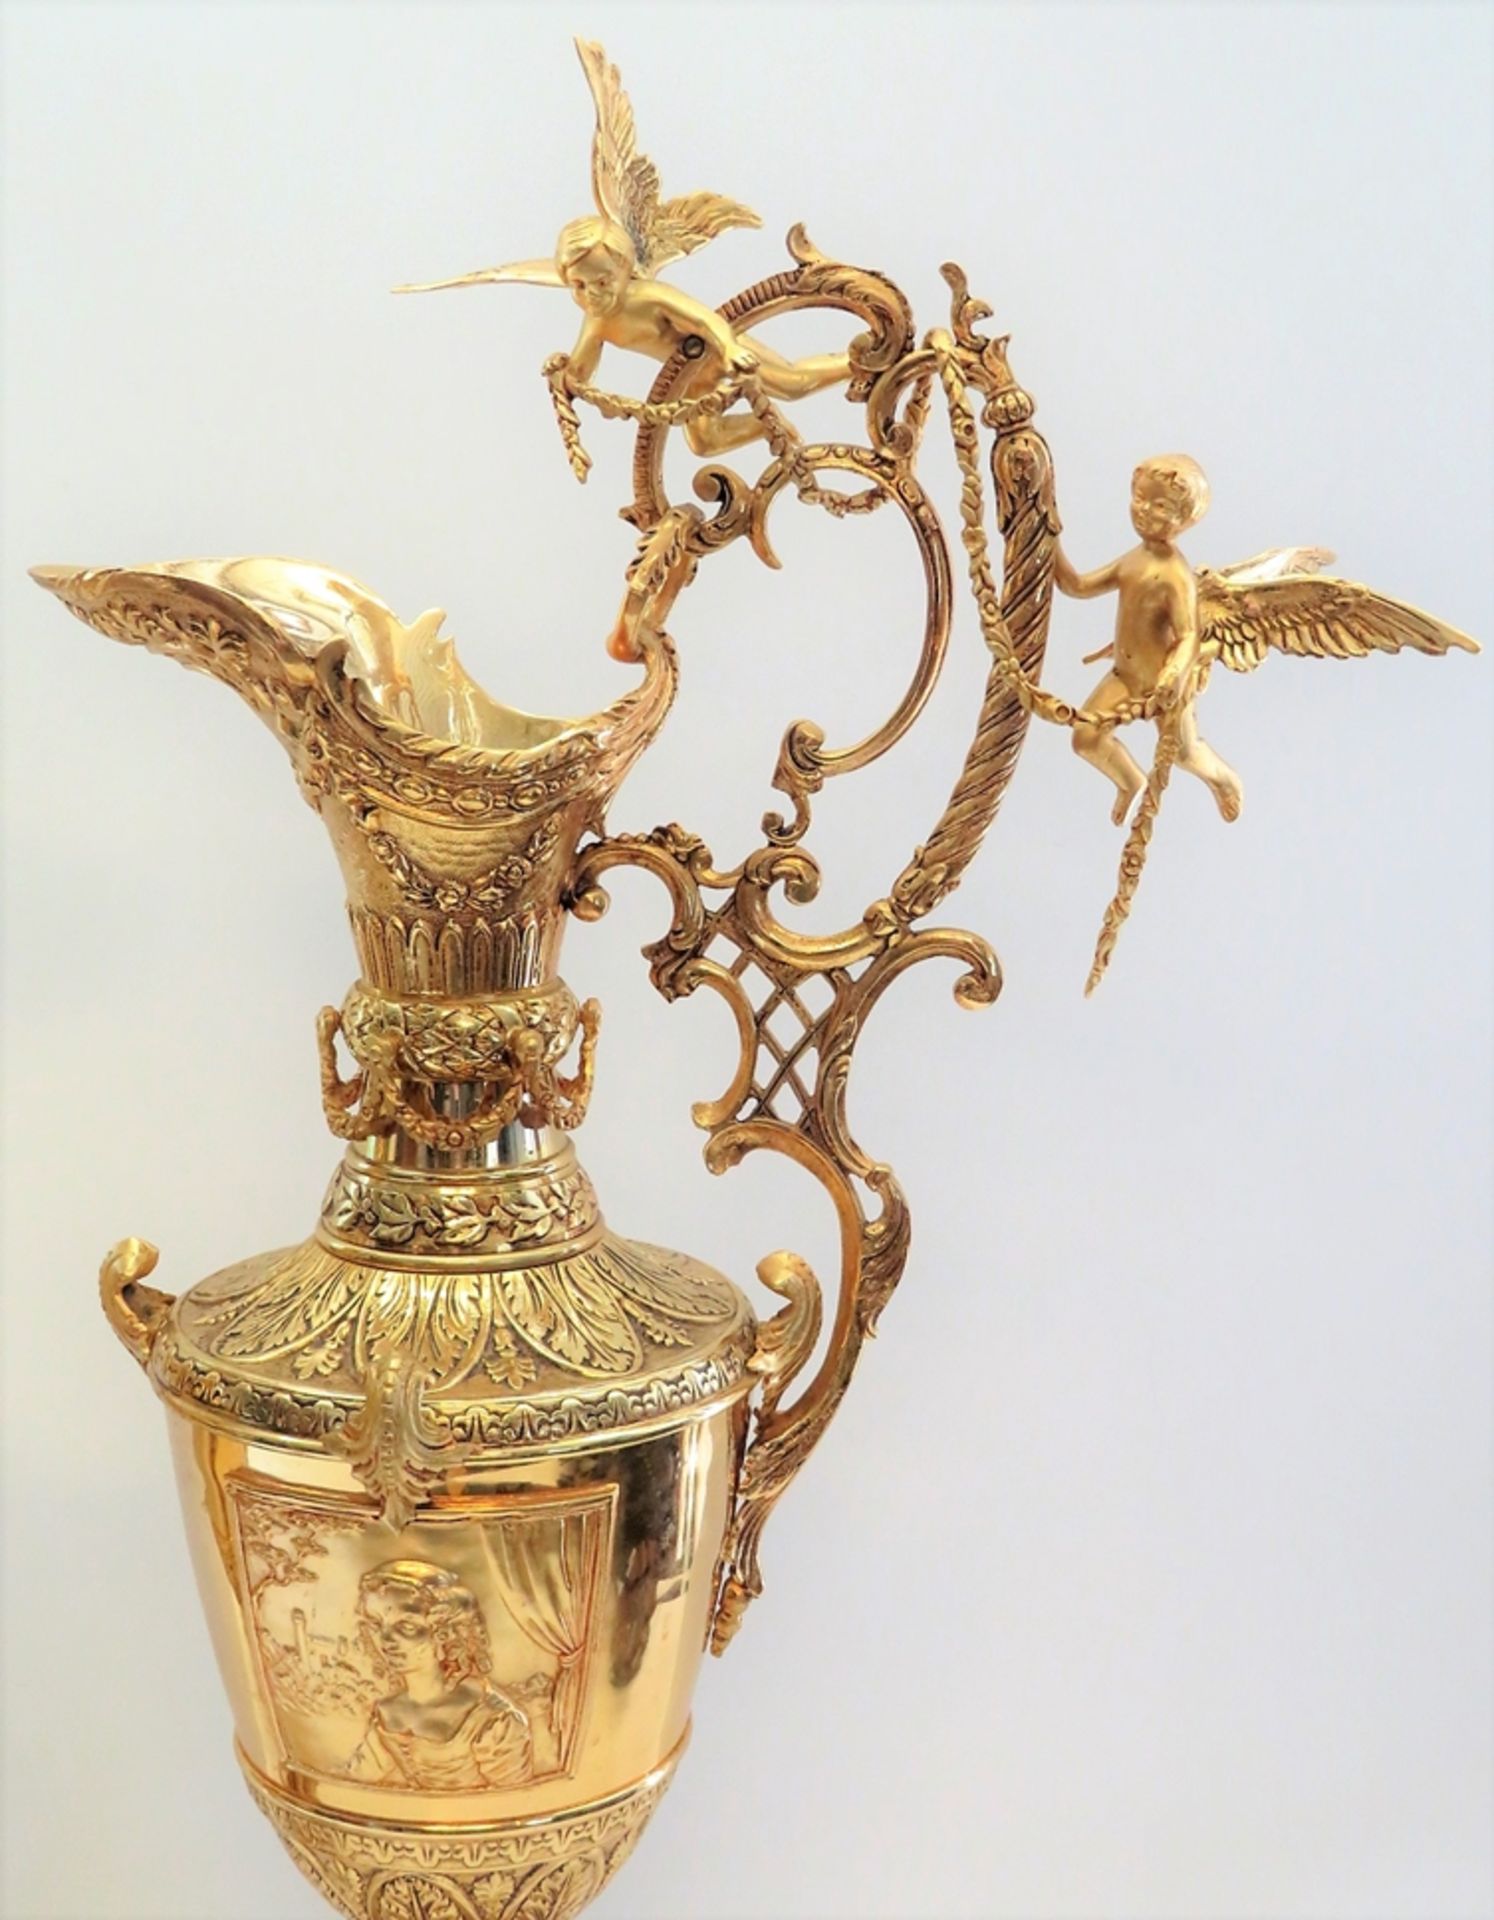 2 prunkvolle Henkelvasen, Frankreich, Bronze mit reicher Vergoldung, Marmorfuß, h 83 cm, d 39 cm. - Image 2 of 2